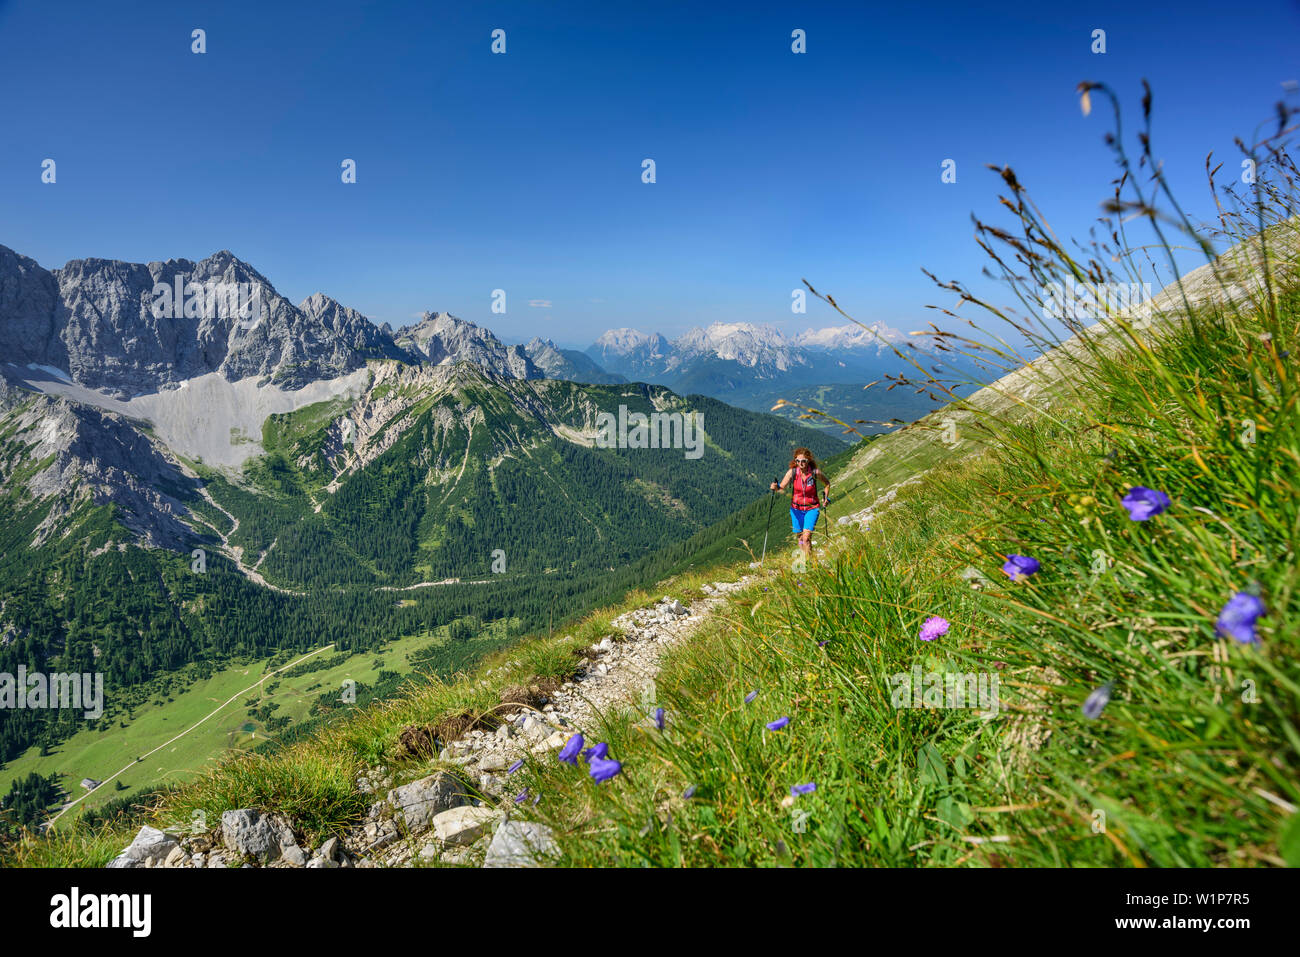 Woman hiking ascending towards Soiernspitze, Woerner and Wetterstein range in background, Soiernspitze, Karwendel range, Upper Bavaria, Bavaria, Germa Stock Photo